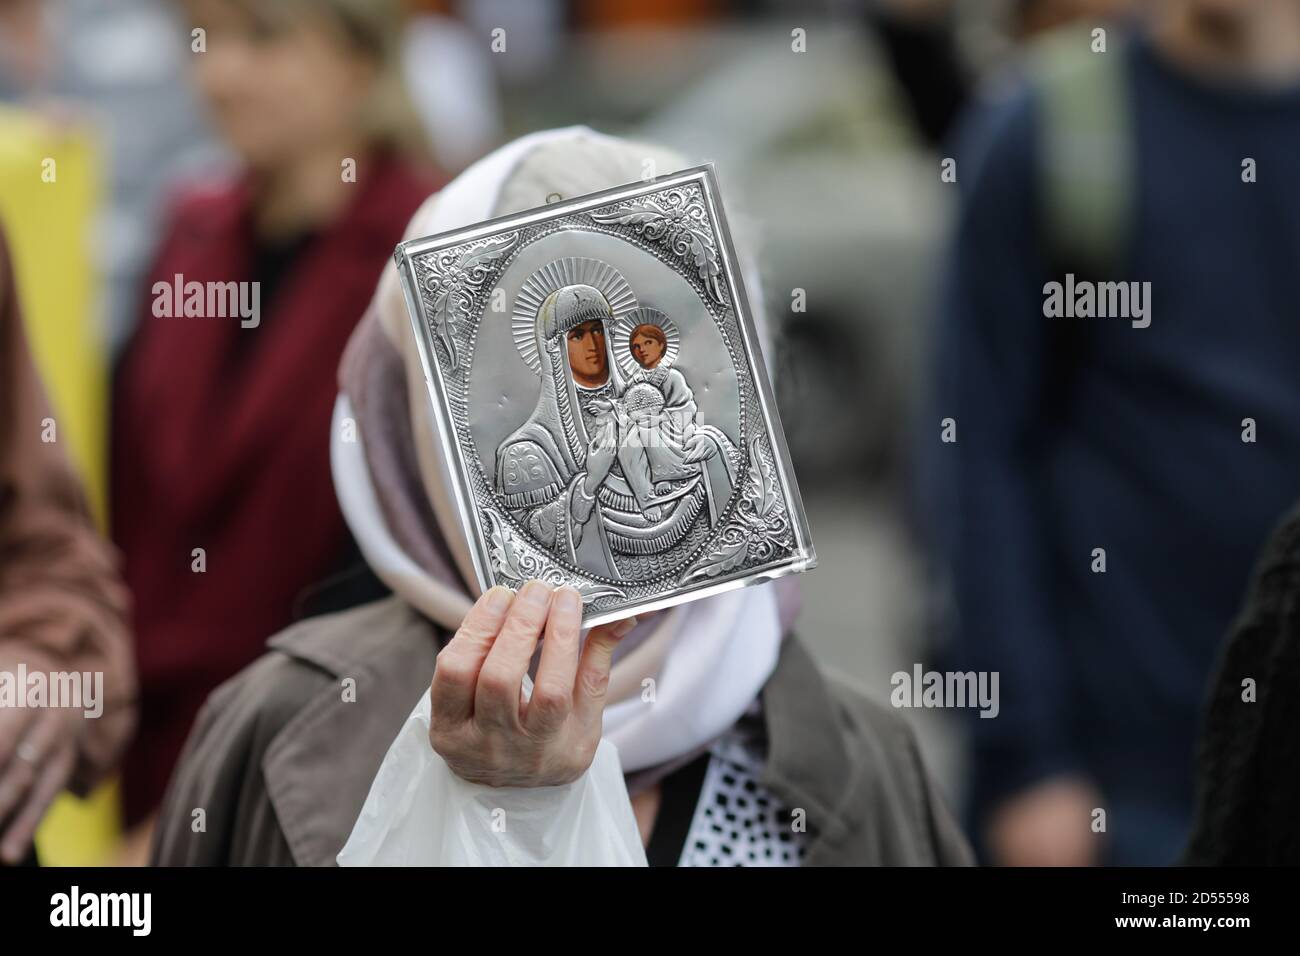 Bucarest, Romania - 10 ottobre 2020: Dettagli con una donna anziana che detiene un'icona della Chiesa ortodossa durante un raduno politico. Foto Stock